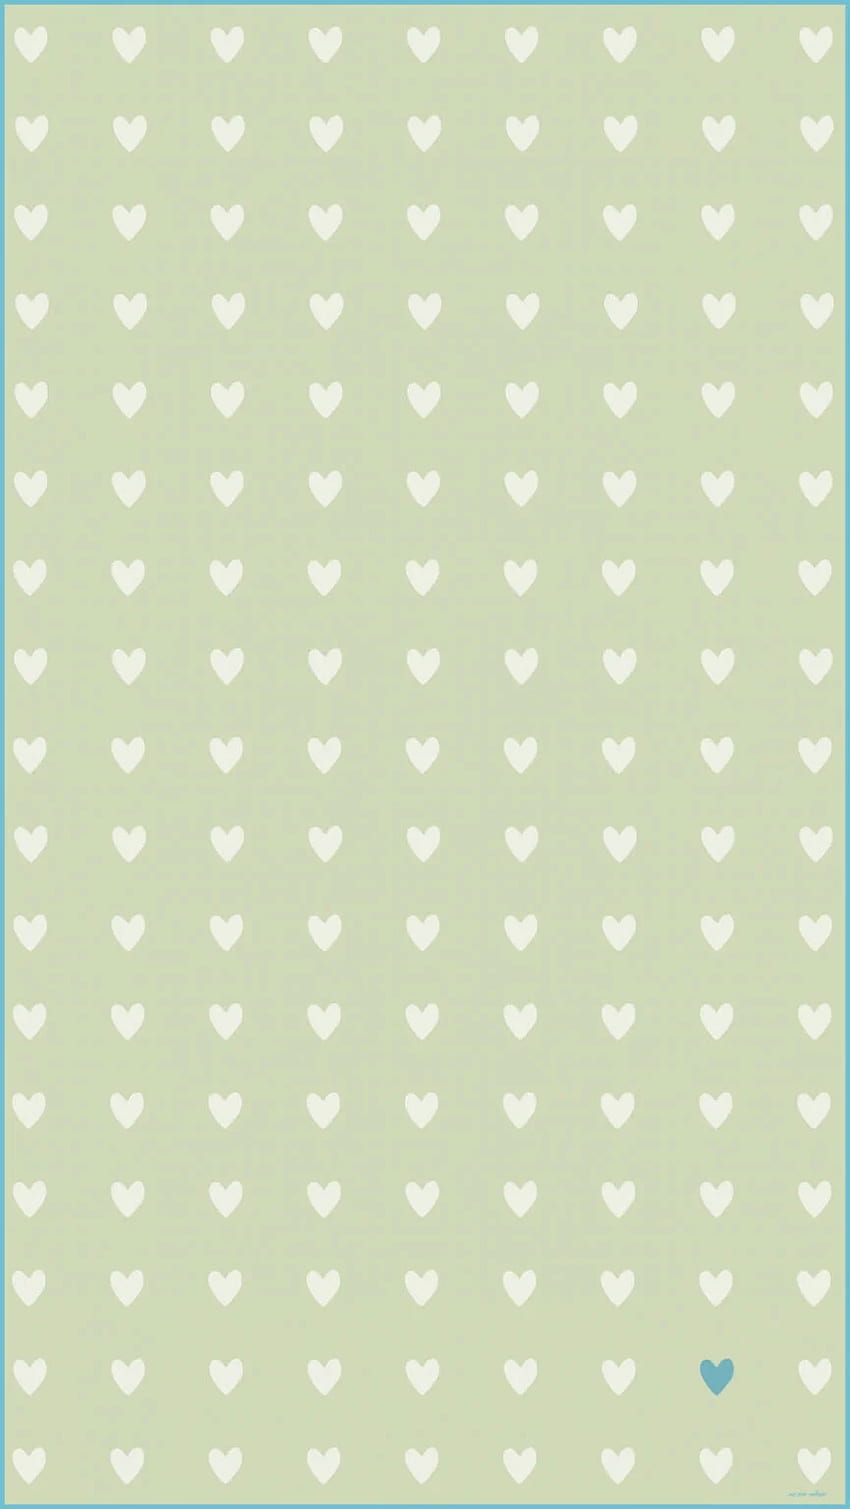 セージ カーキ ミニ ハート iPhone 背景電話 - セージ グリーン, セージ グリーン エステ HD電話の壁紙